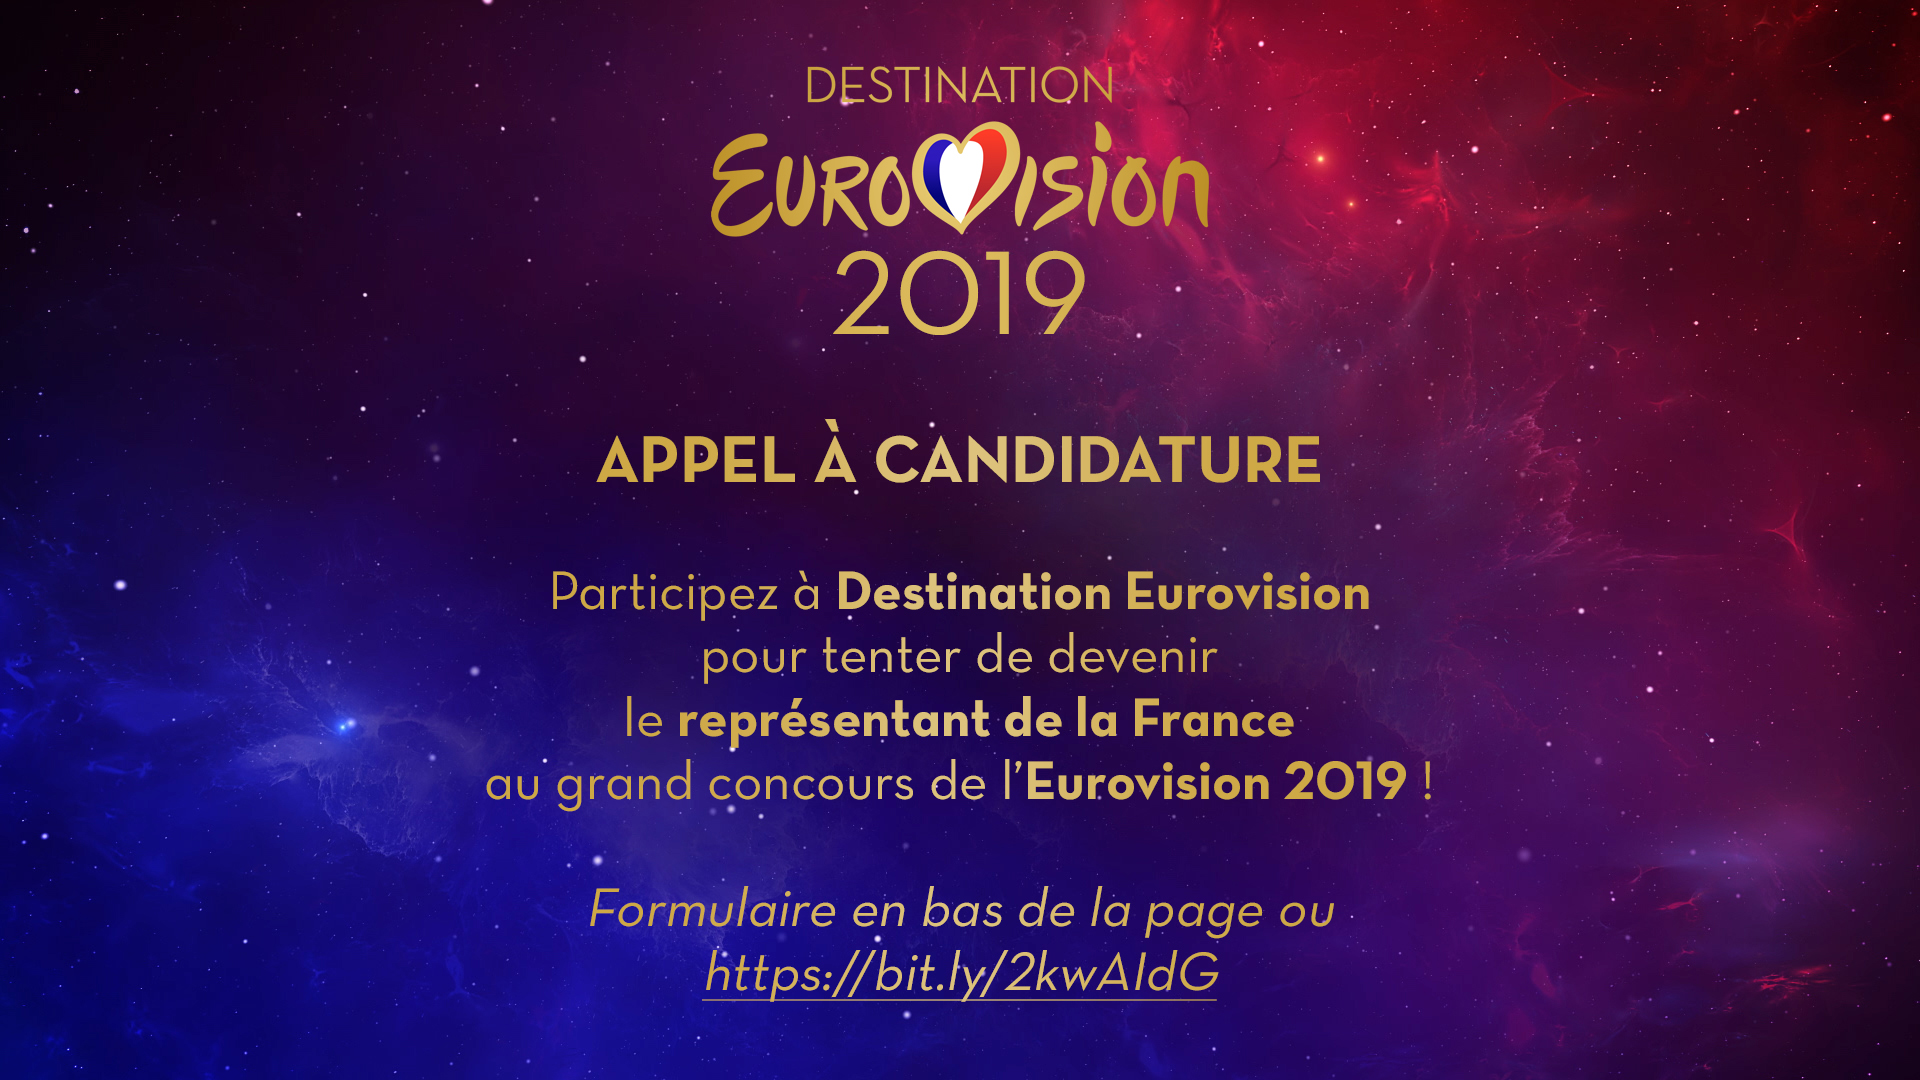 Γαλλία : Ξεκίνησε η υποβολή αιτήσεων για το Destination Eurovision 2019!